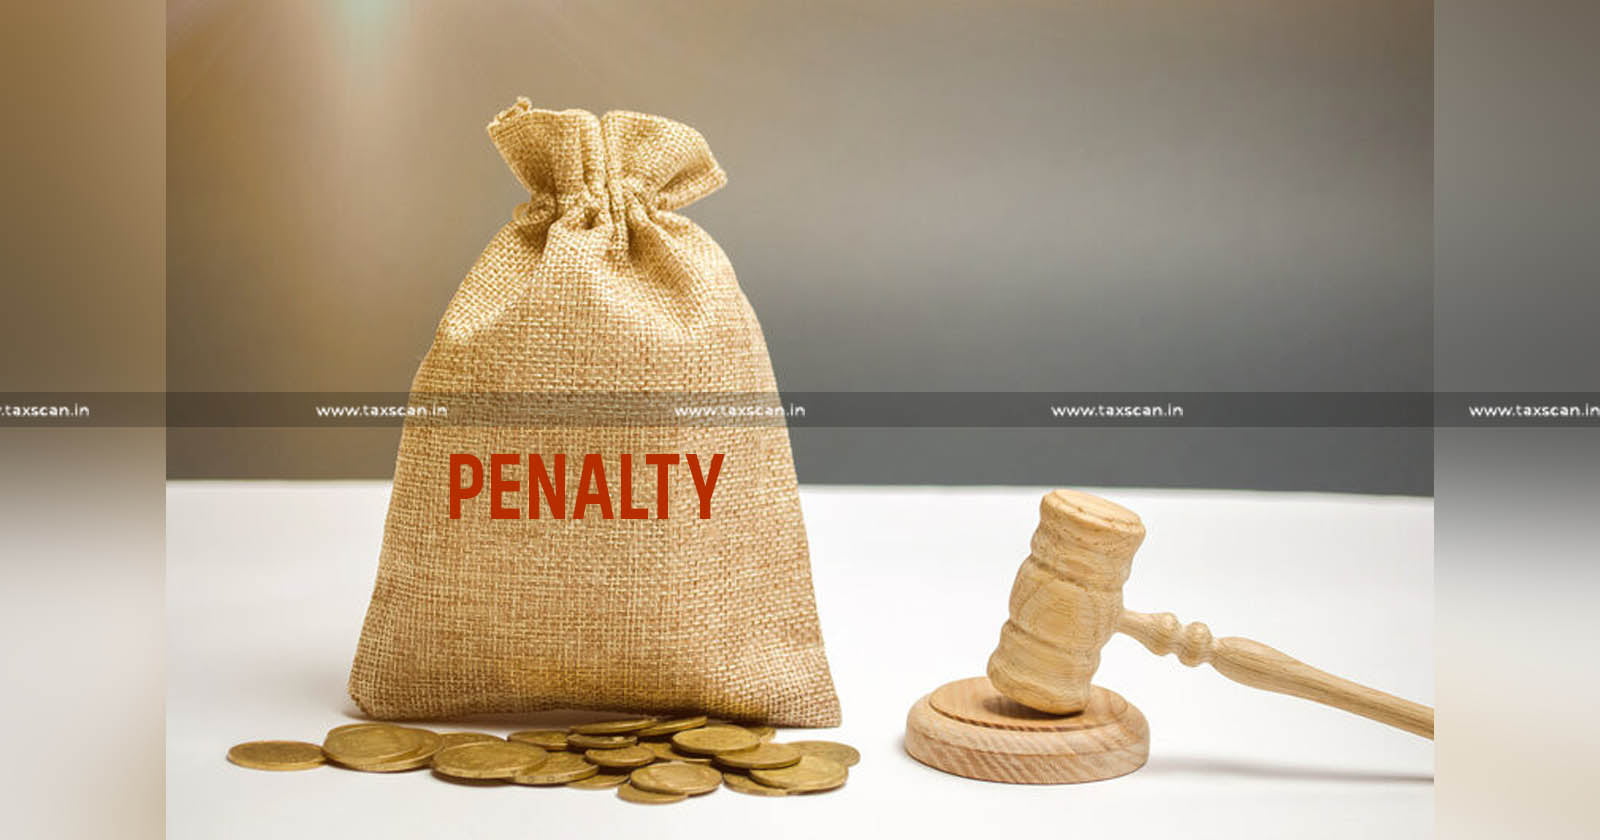 Penalty - Central Excise Rules - Central Excise - bogus LR - amendment - CESTAT - taxscan